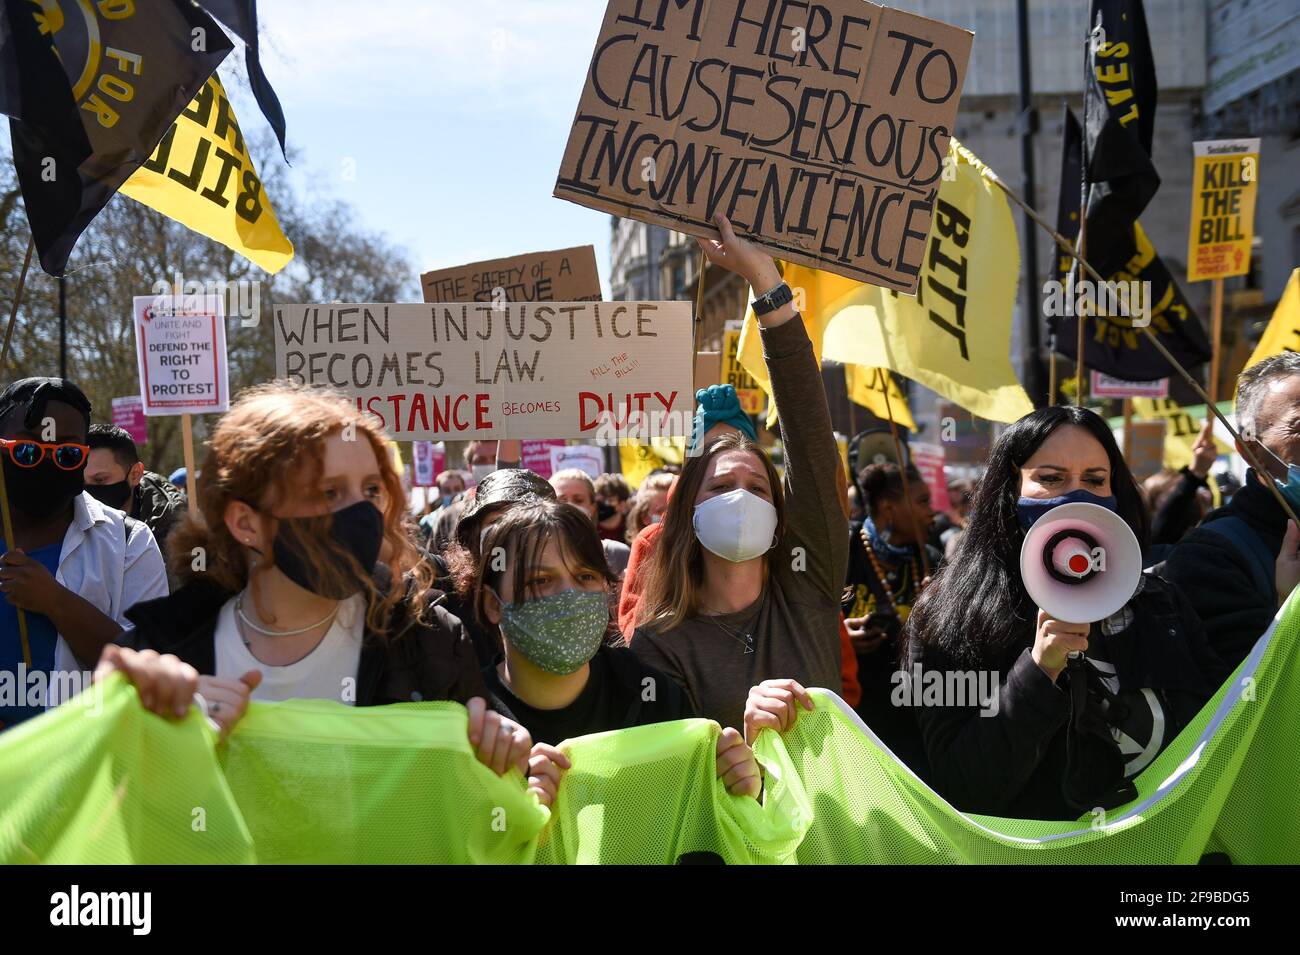 Die Demonstranten marschieren während eines Protestes gegen das Gesetz über Polizei, Verbrechen, Verurteilung und Gerichte in London. Bilddatum: Samstag, 17. April 2021. Stockfoto